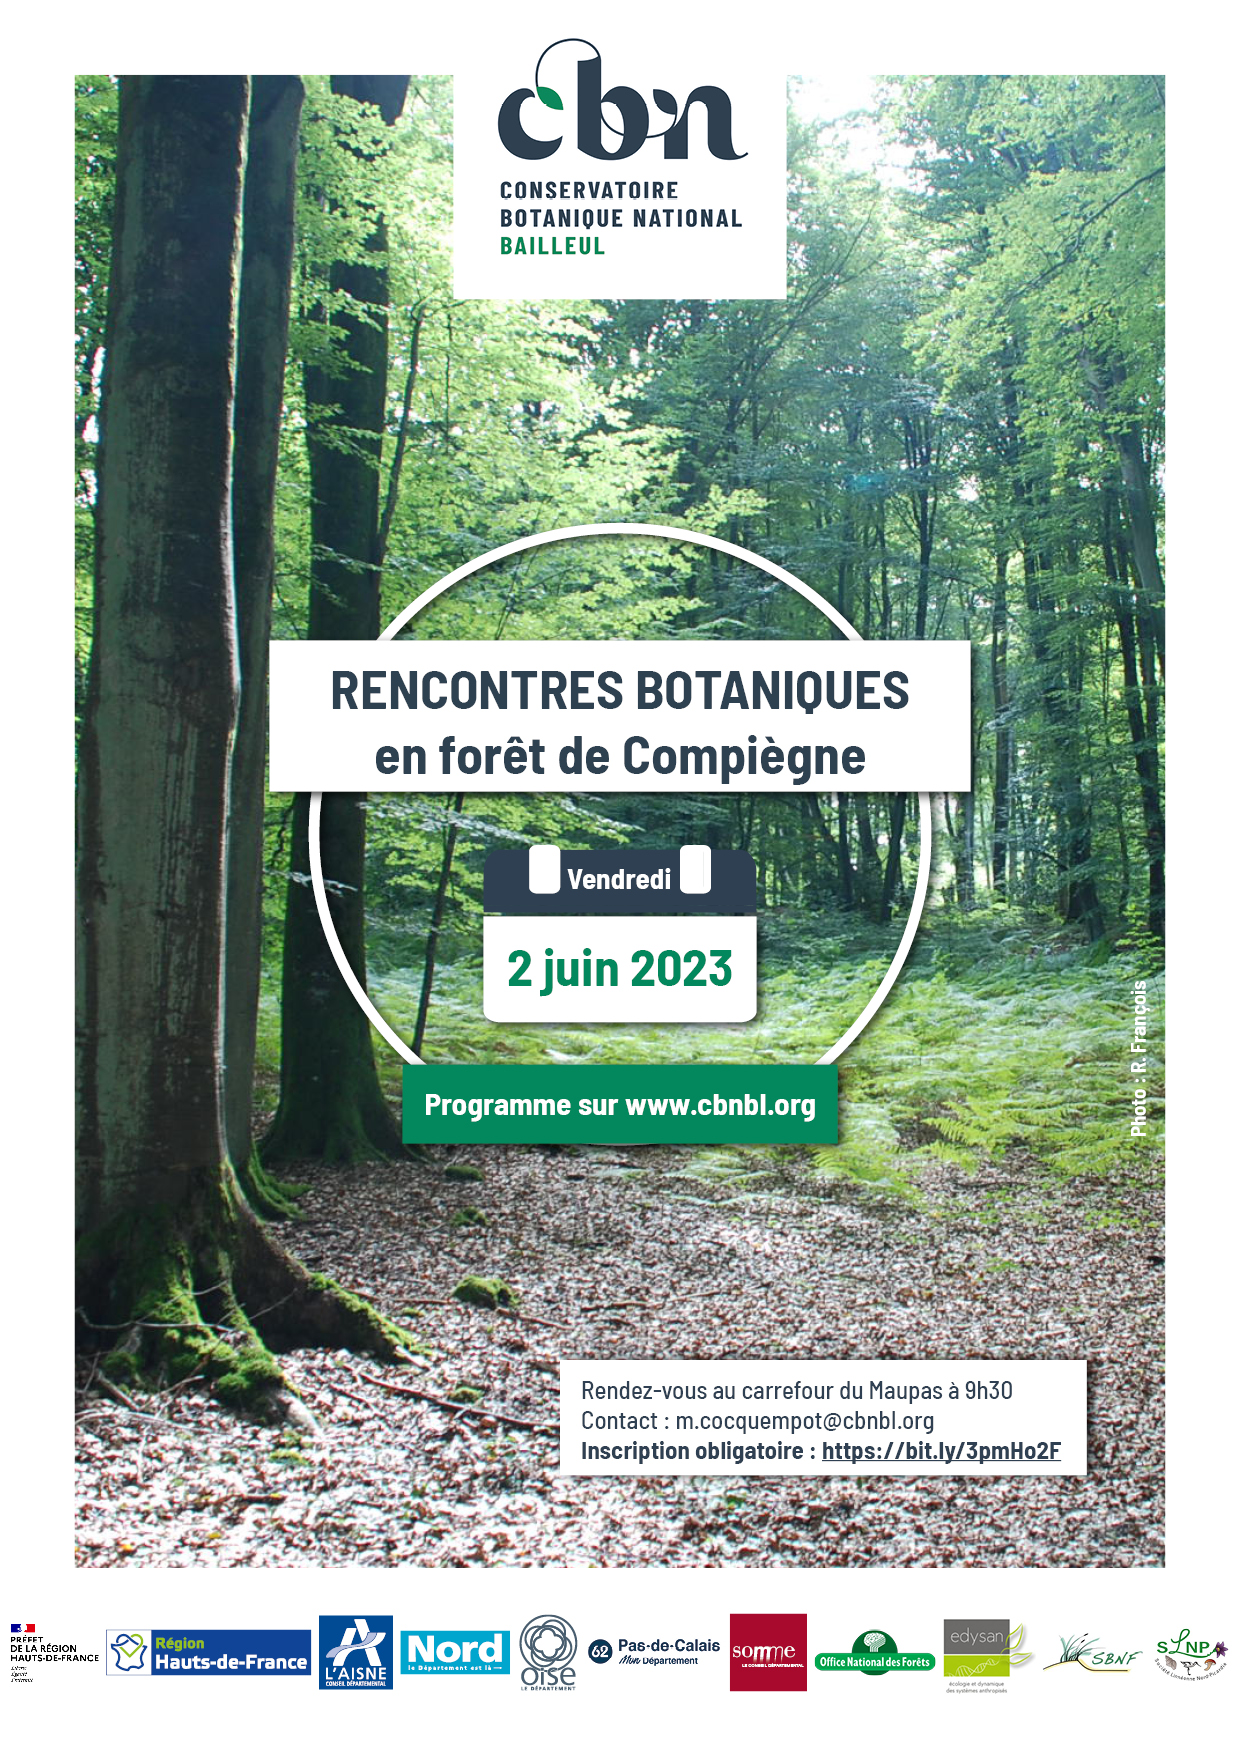 Participez aux Rencontres botaniques 2023 en forêt de Compiègne !